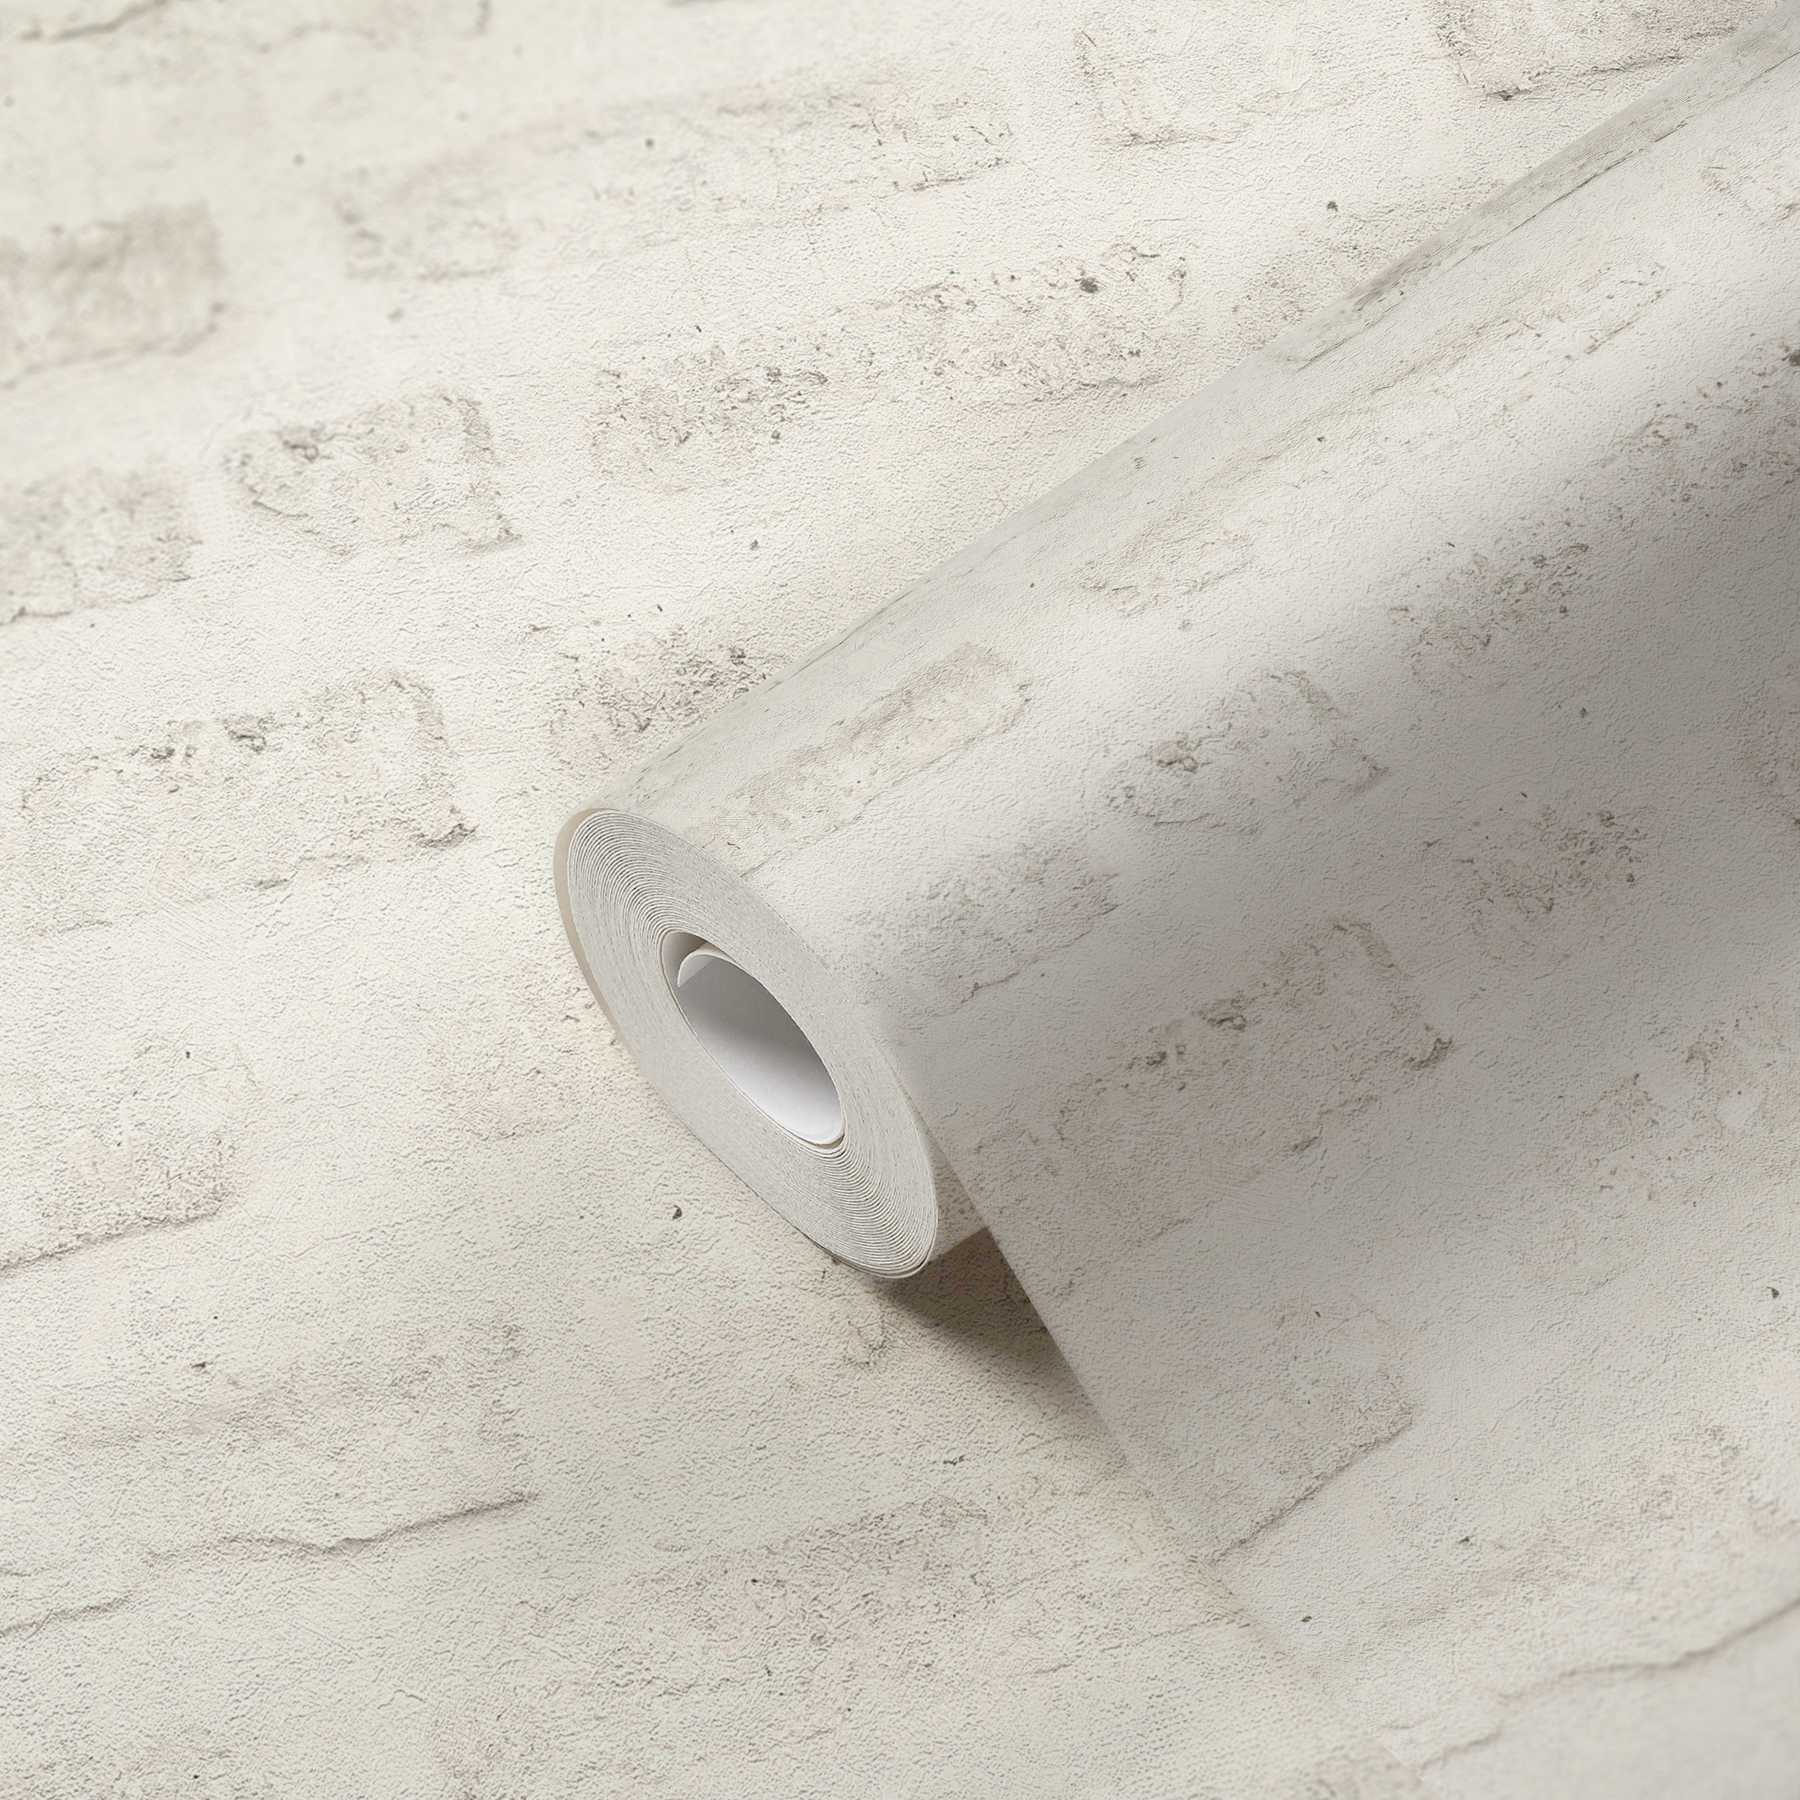             Industrial Style Tapete mit Steinoptik und Mauermotiv – Grau, Weiß
        